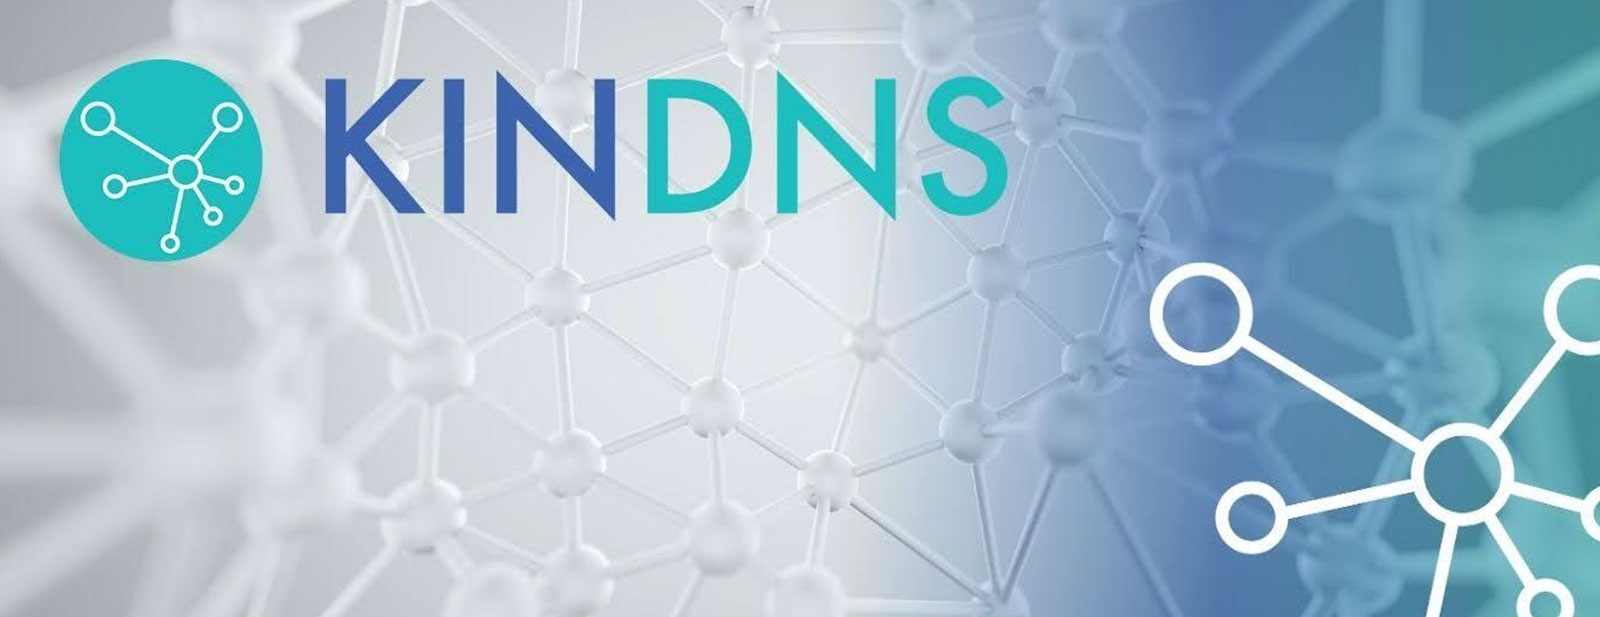 تمكين مشغلي DNS: استكشاف مبادرة KINDNS من أجل إنترنت أكثر أمانًا